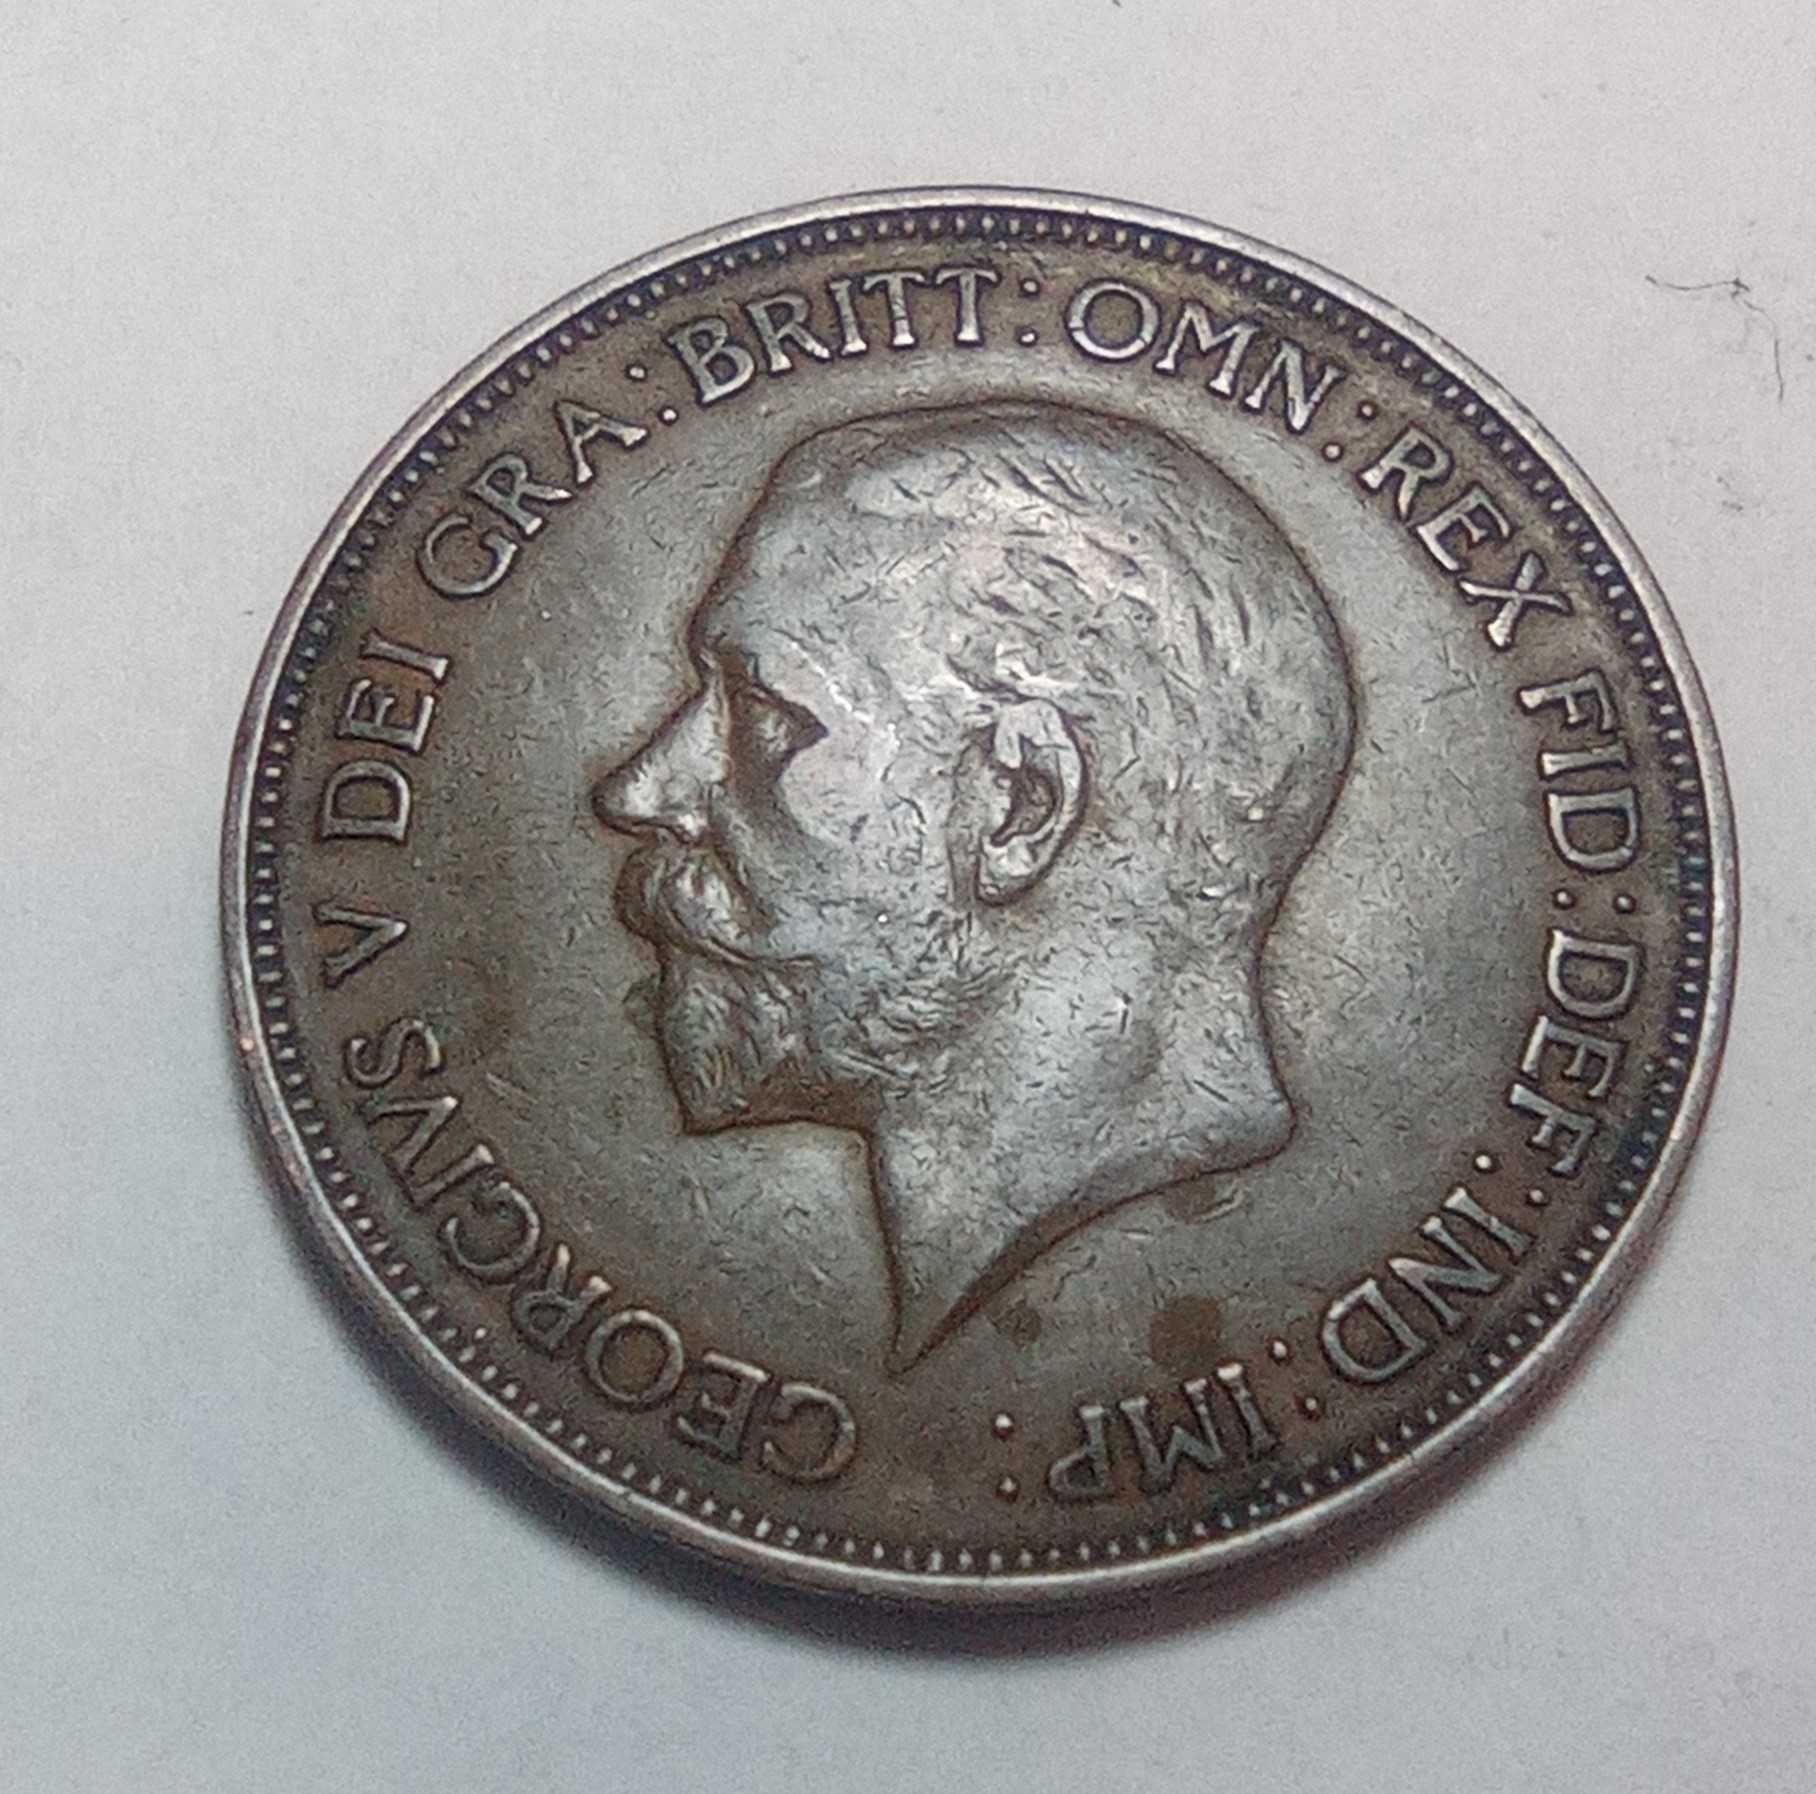 Monety Anglia One Penny różne roczniki.